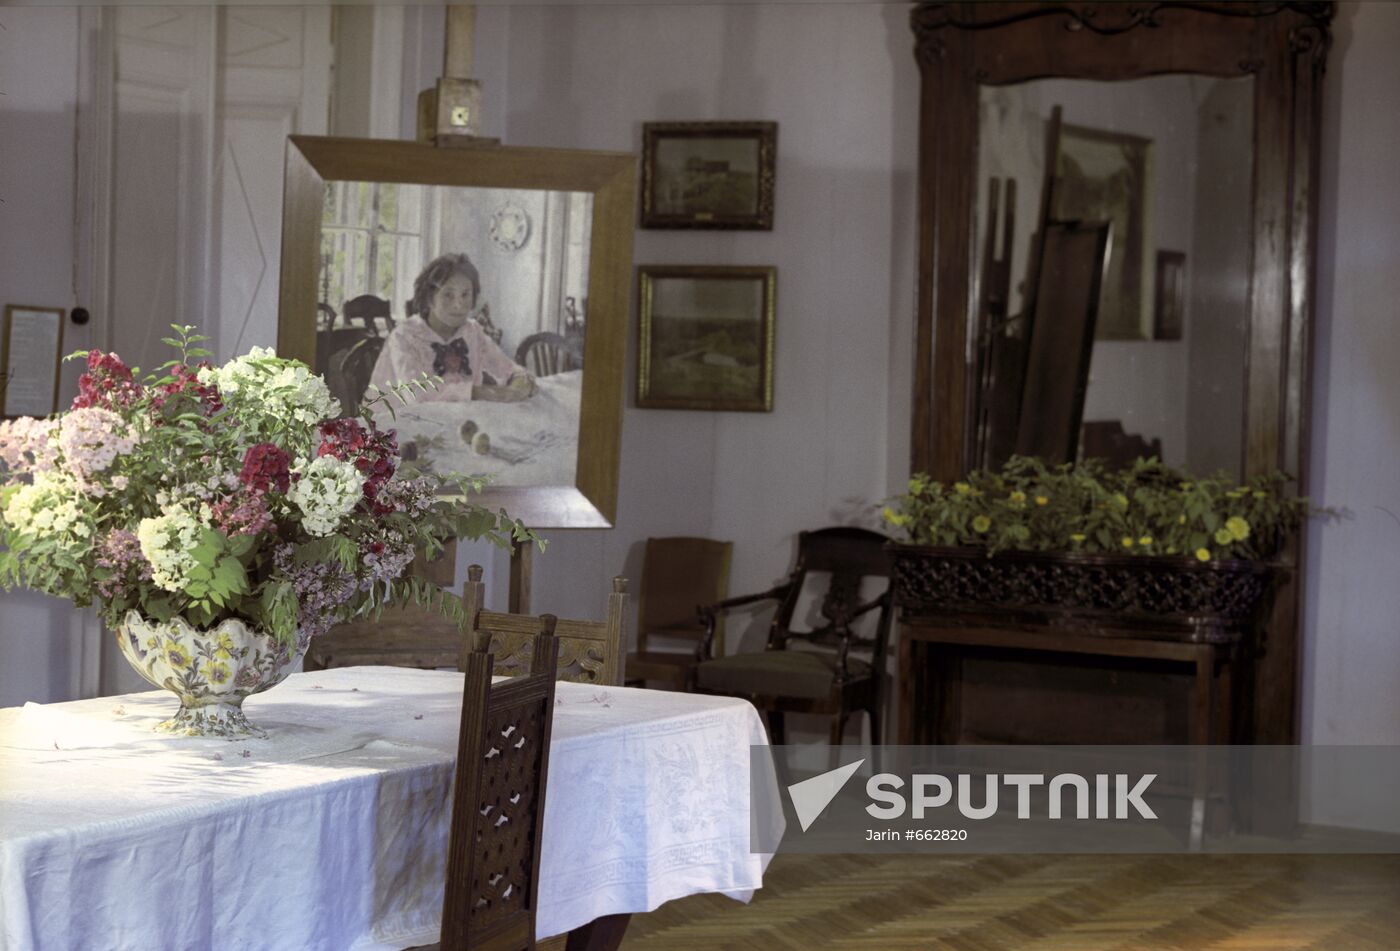 Mamontovs` dining-room in Abramtsevo